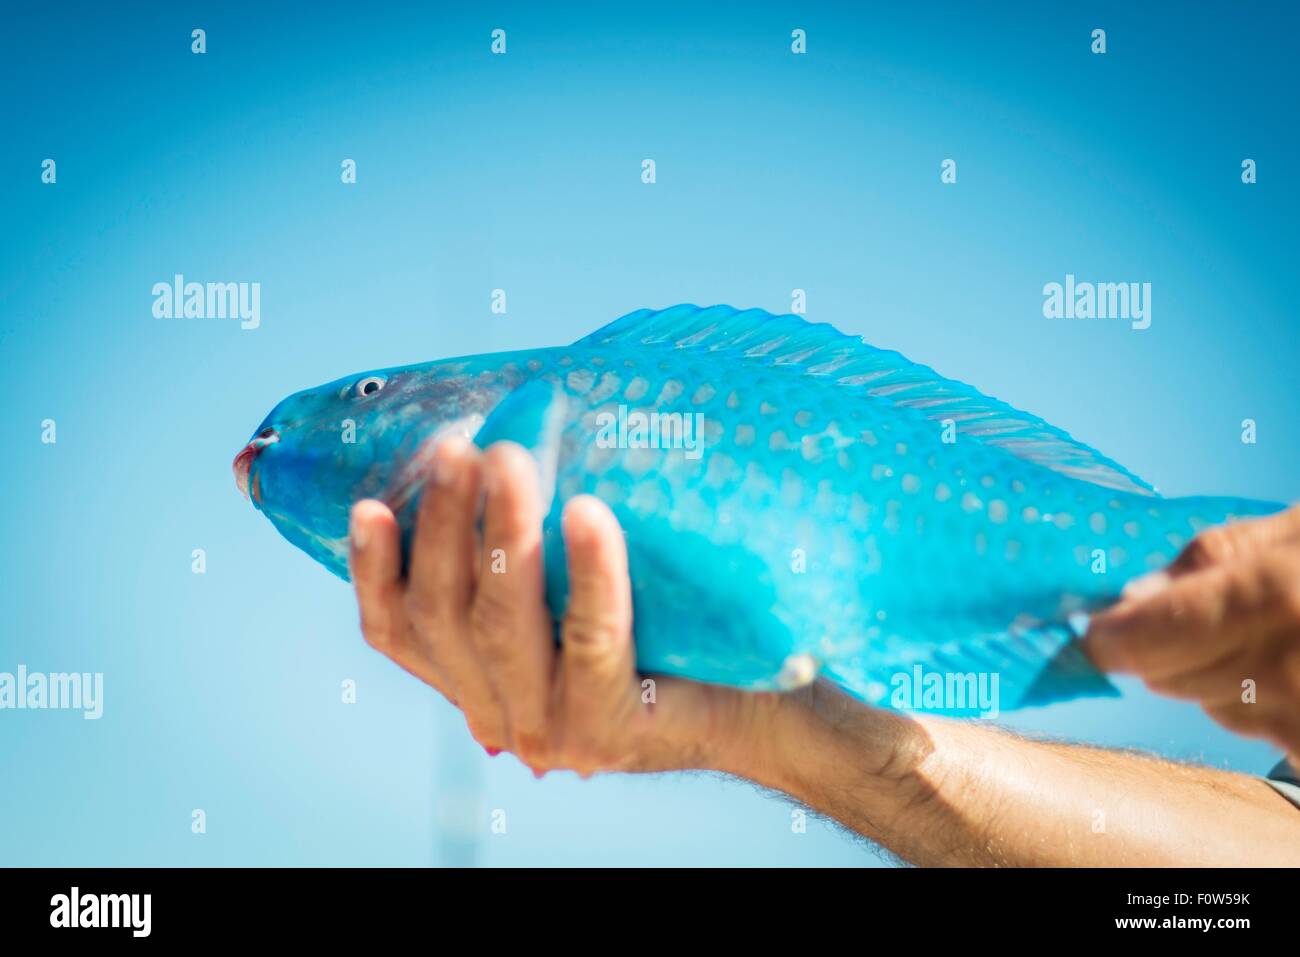 Maschio di mano azienda turchese pesci pappagallo, Islamorada, Florida, Stati Uniti d'America Foto Stock